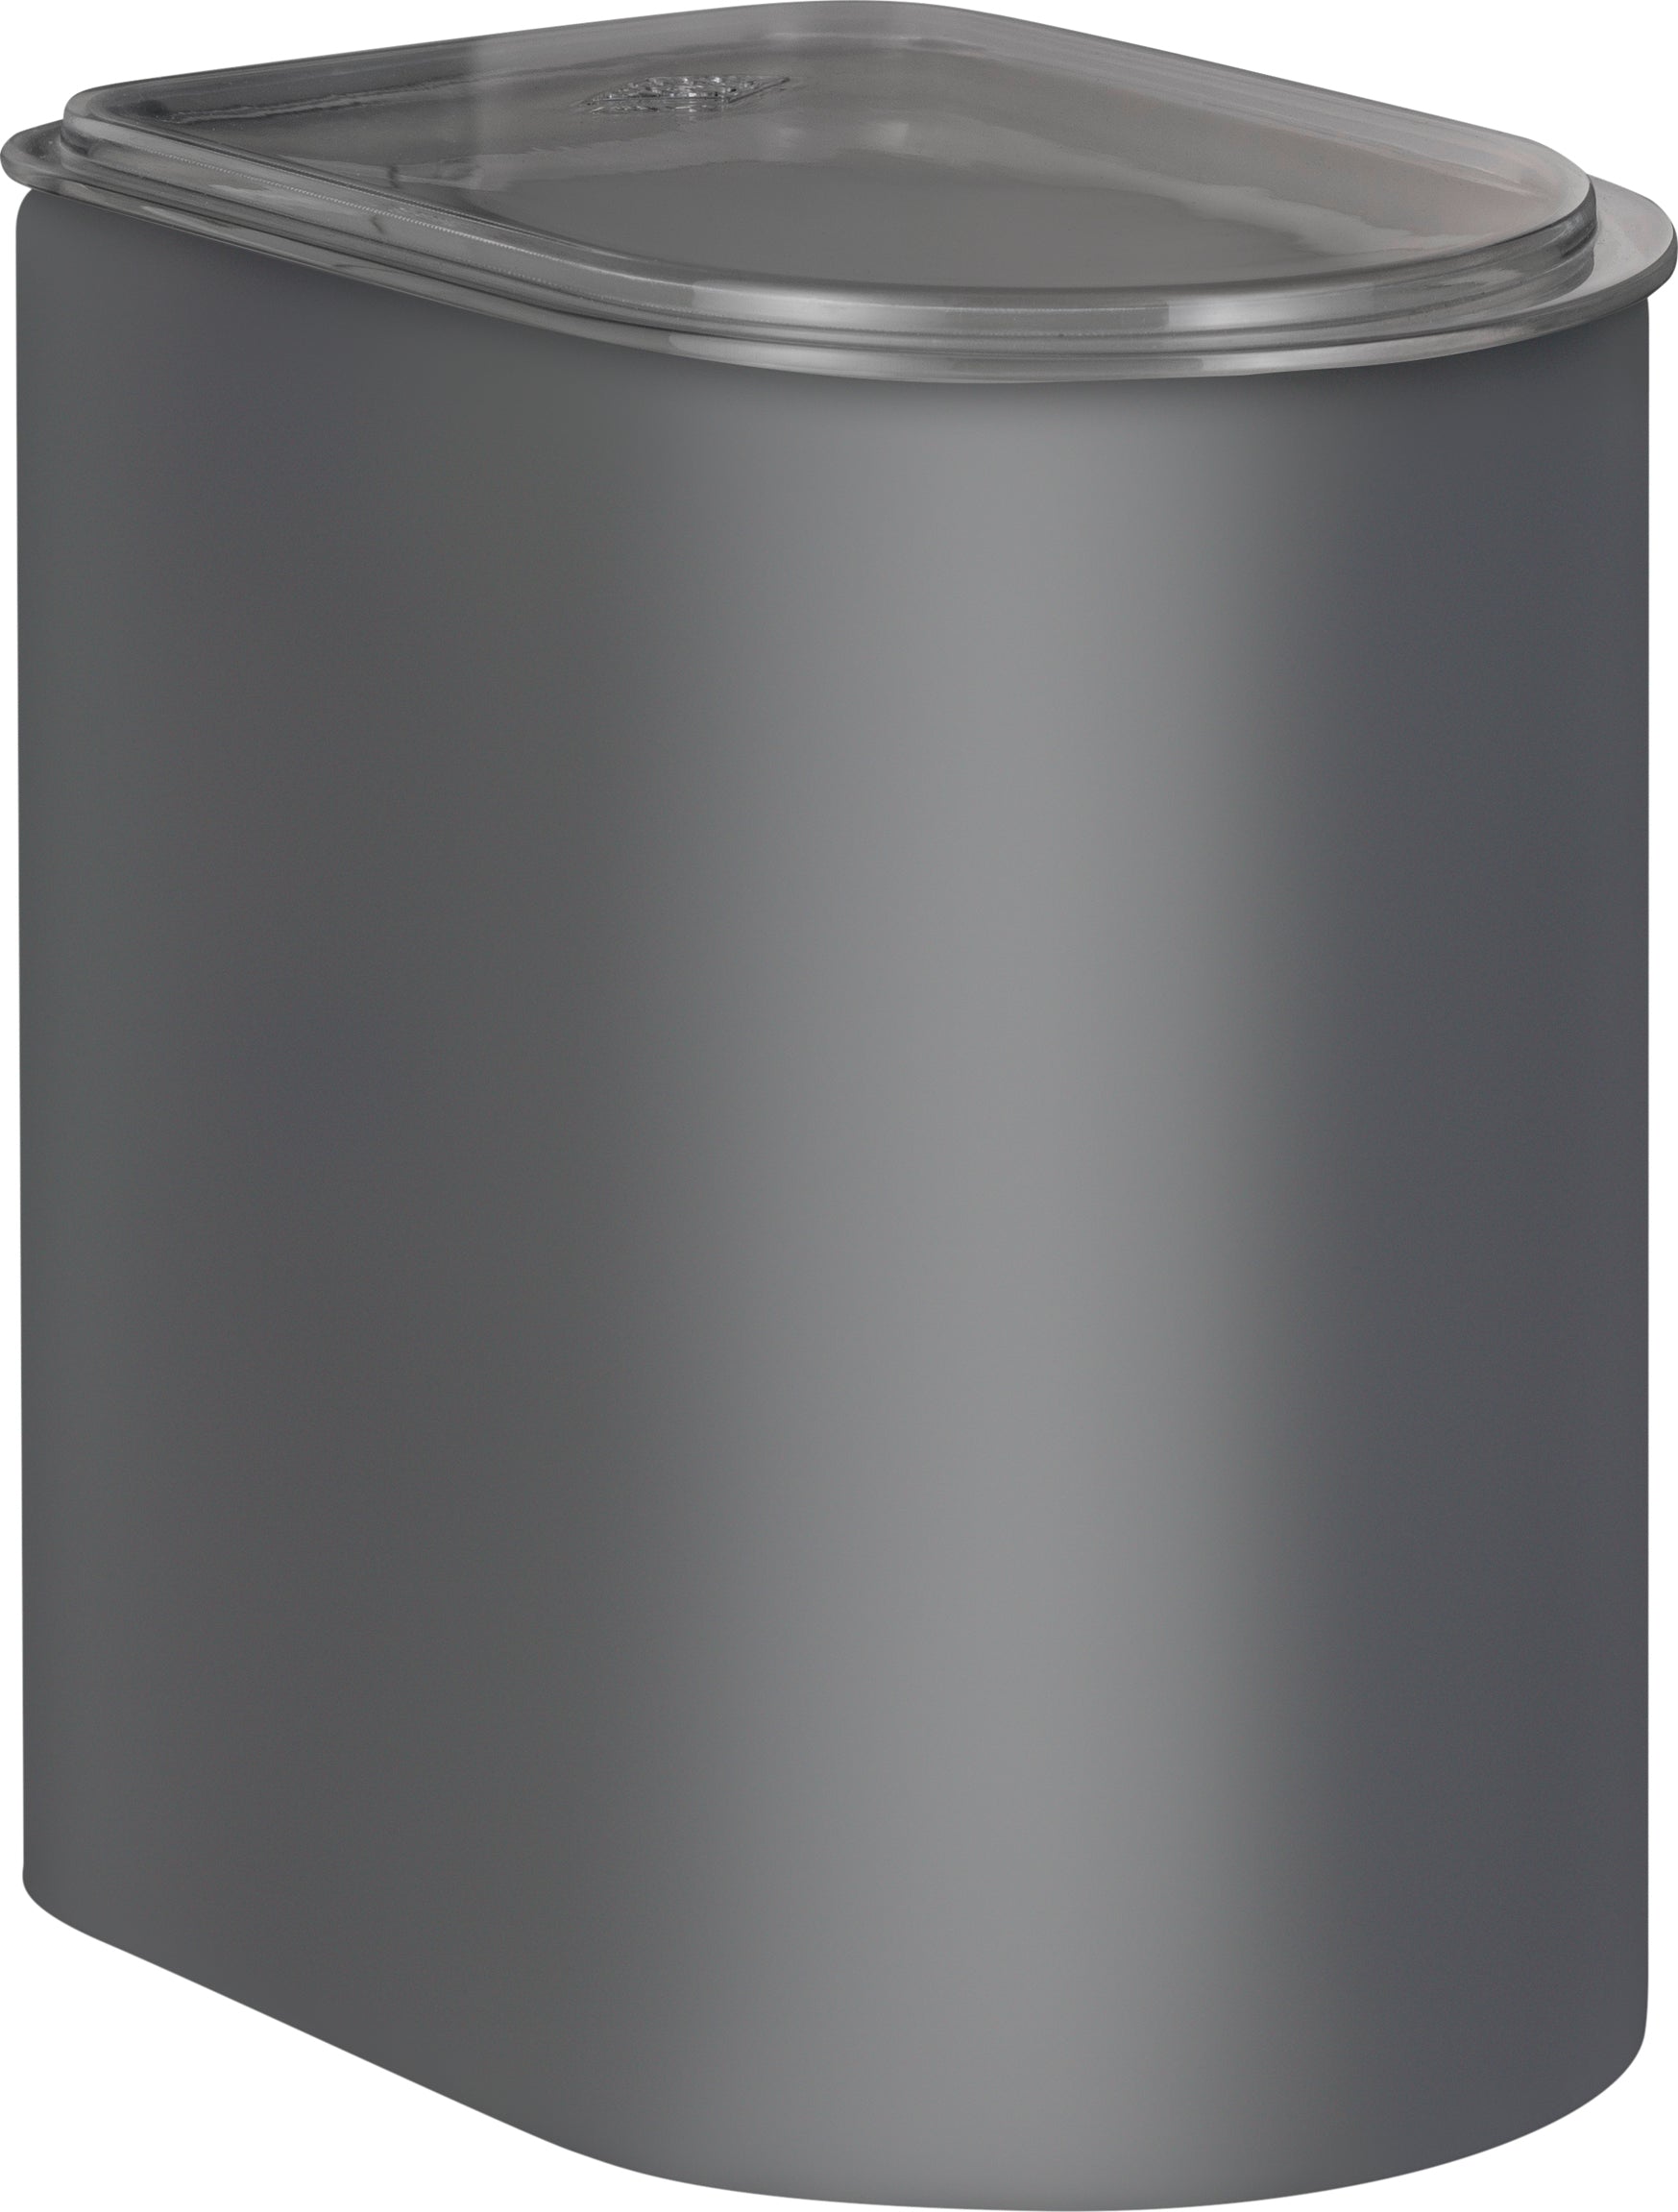 Wesco Dåse 2,2 liter med akryllåg, grafit Matt